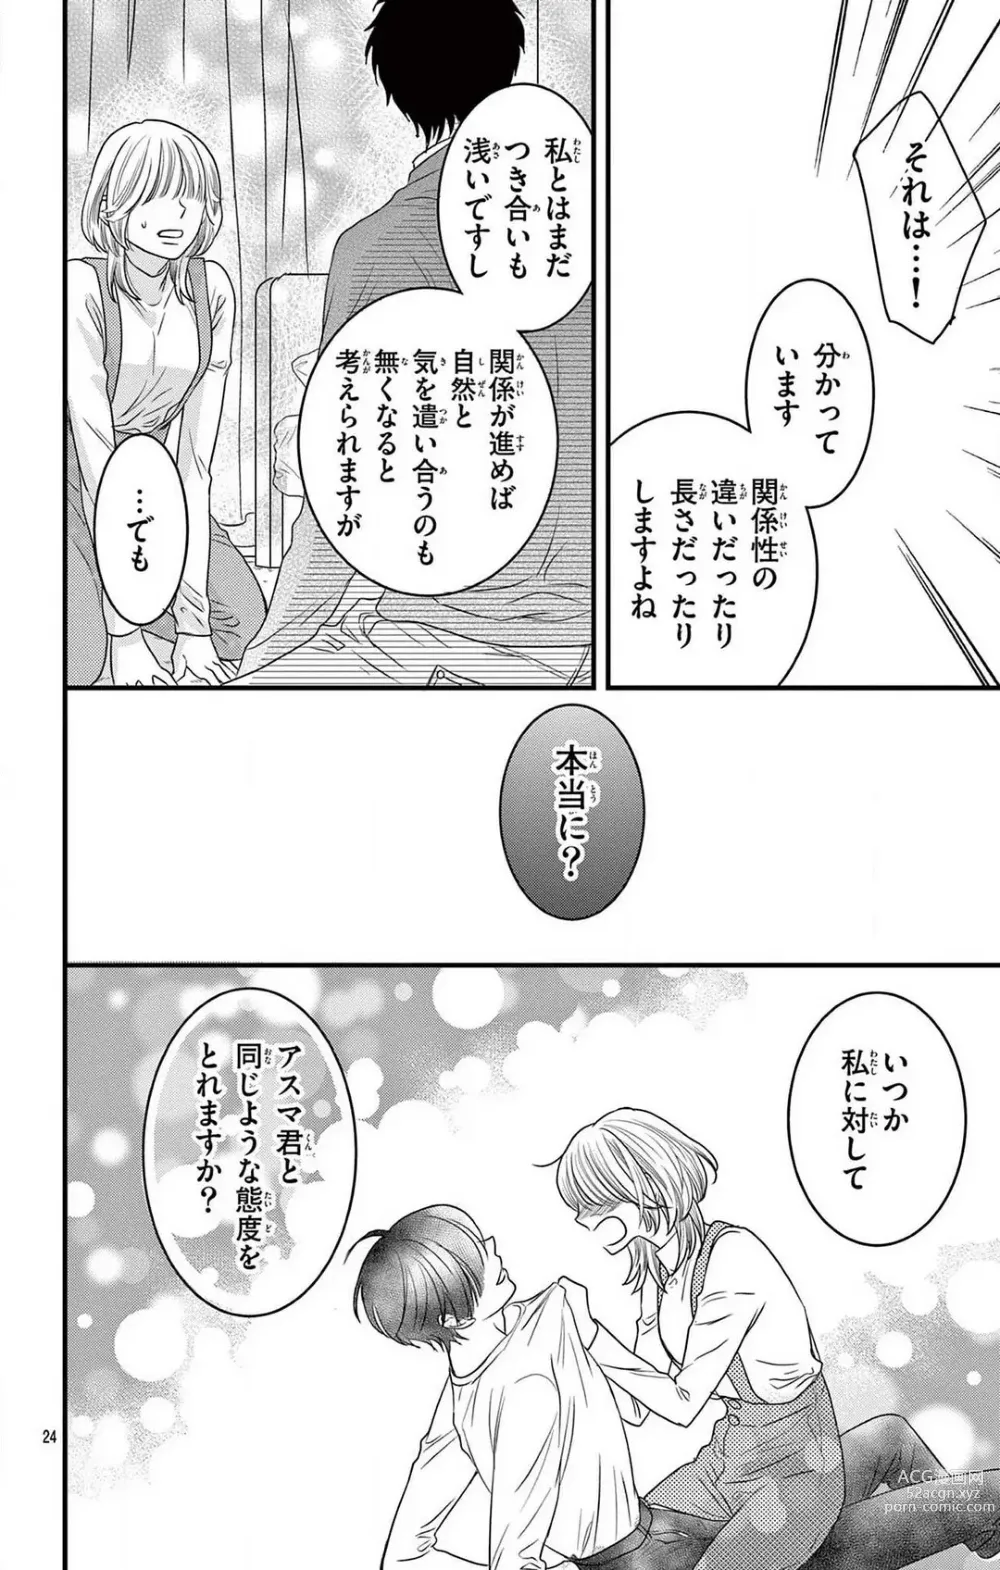 Page 230 of manga Kuzu wa Kuzu Demo Kao ga ii Kuzu 1-7